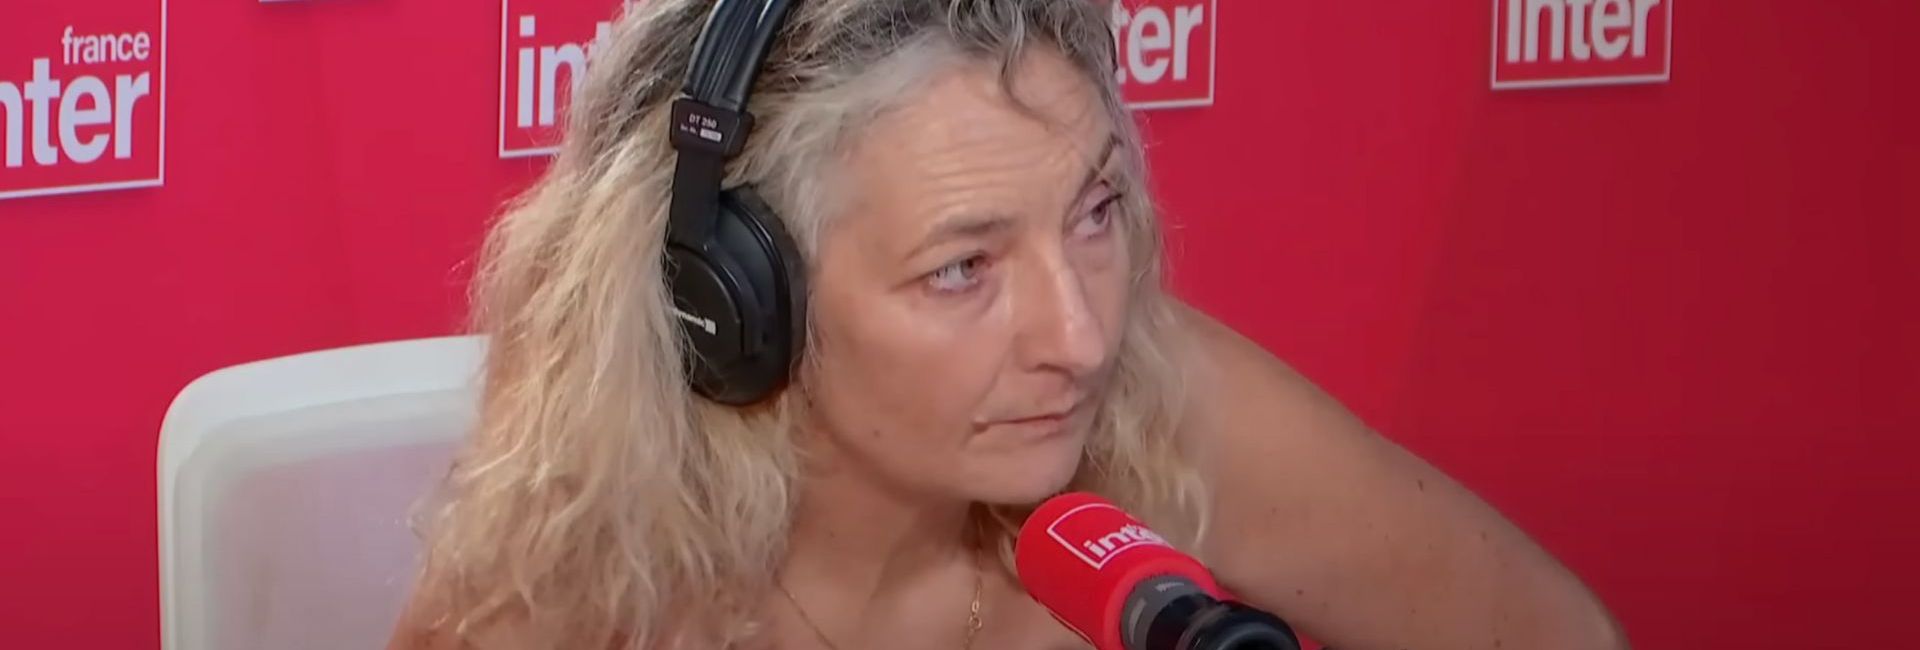 Corinne Masiero s’exprime sur l’inceste, au micro de France Inter